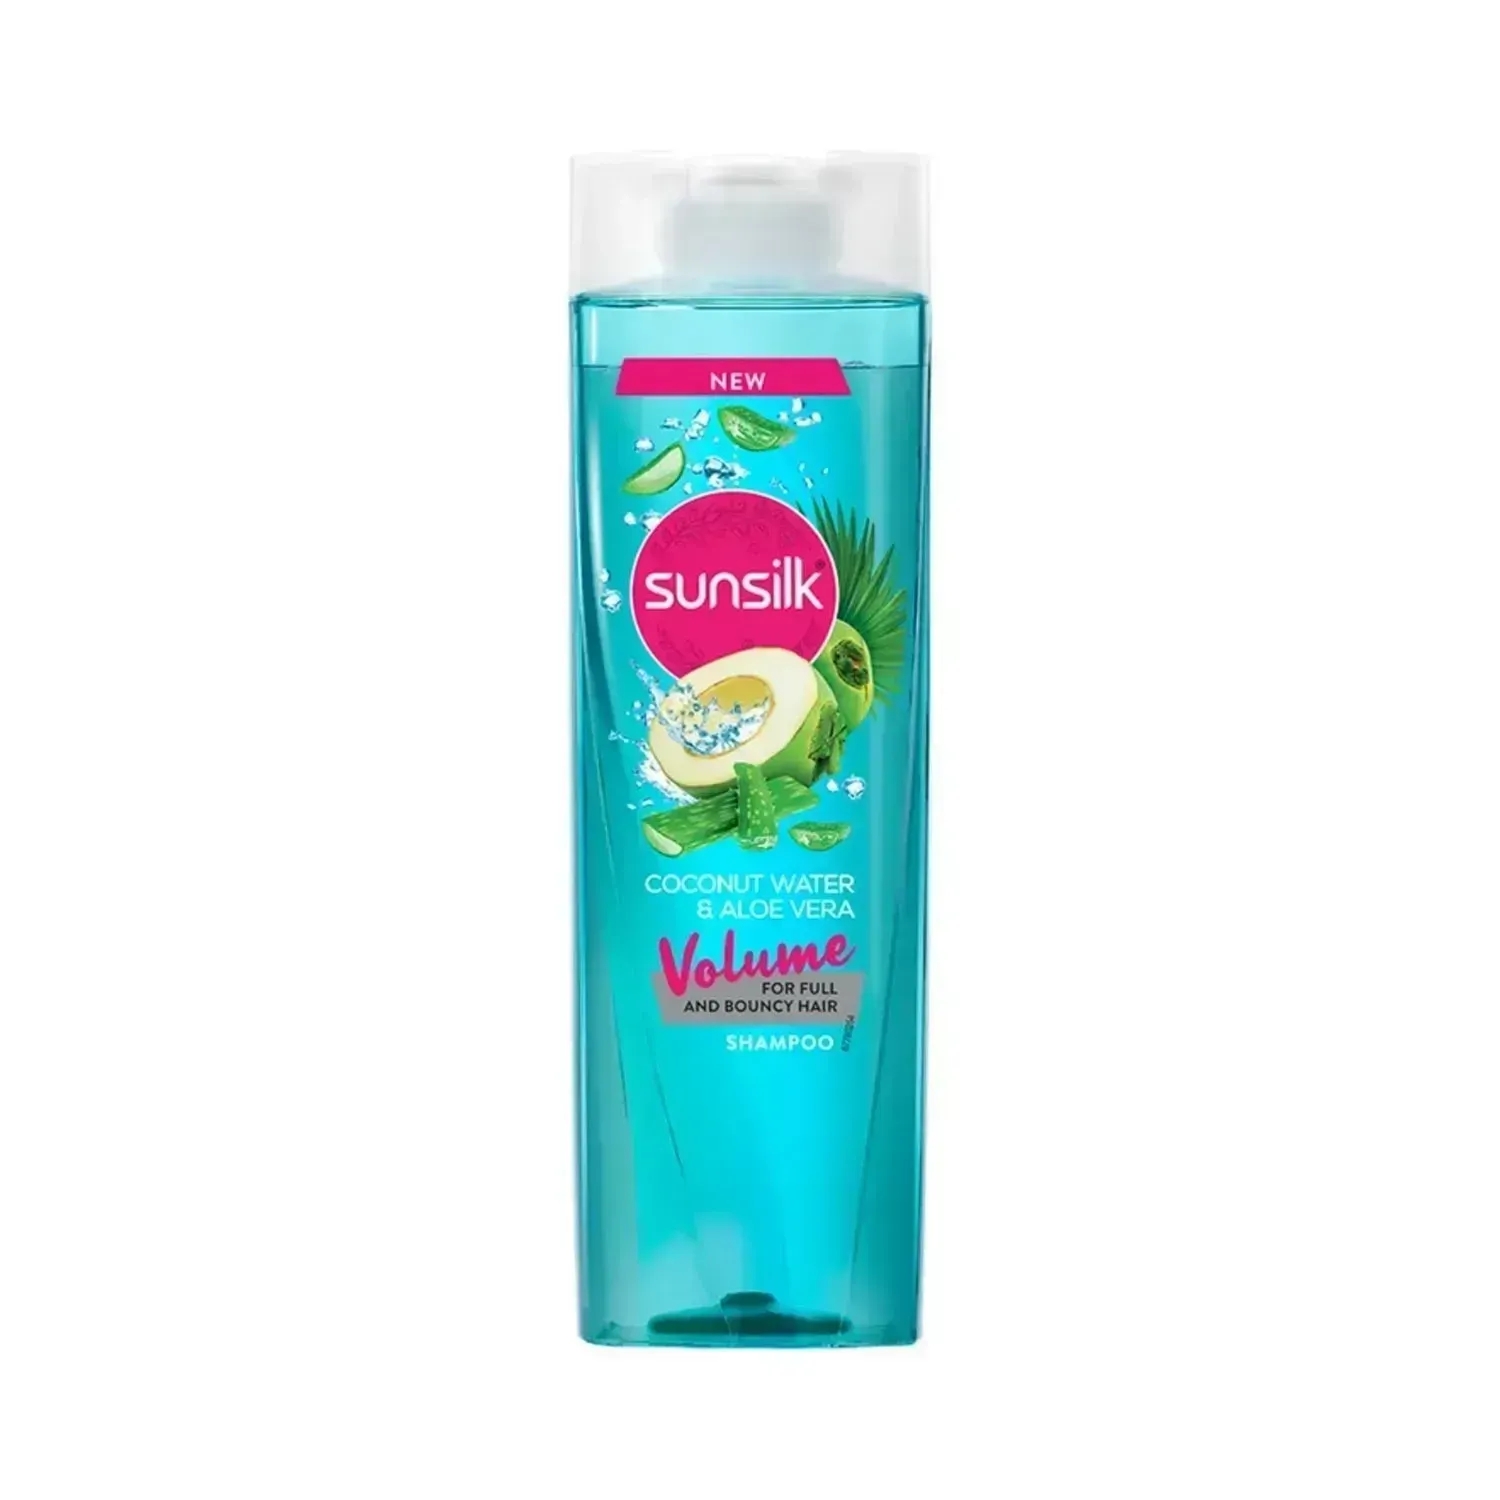 Sunsilk | Sunsilk Coconut Water & Aloe Vera Volume Hair Shampoo - (195ml)